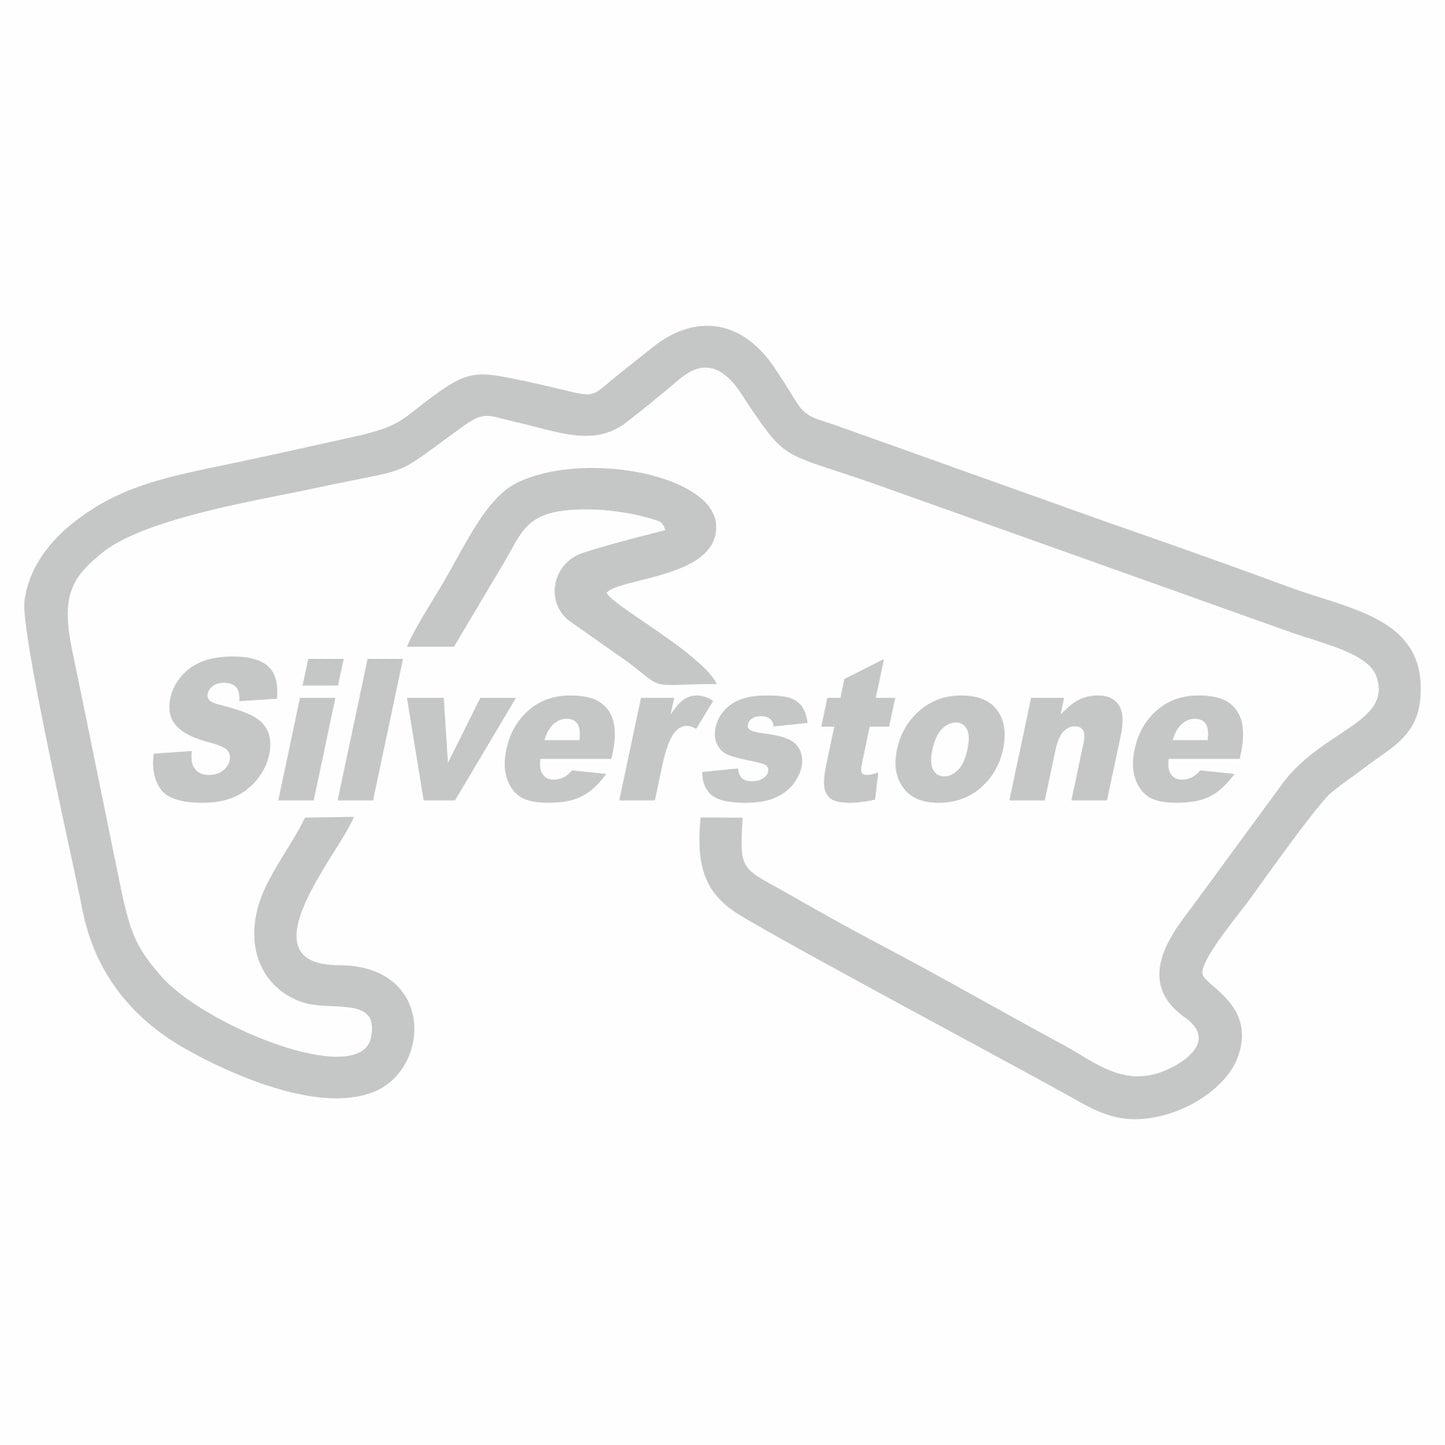 Silverstone Sticker